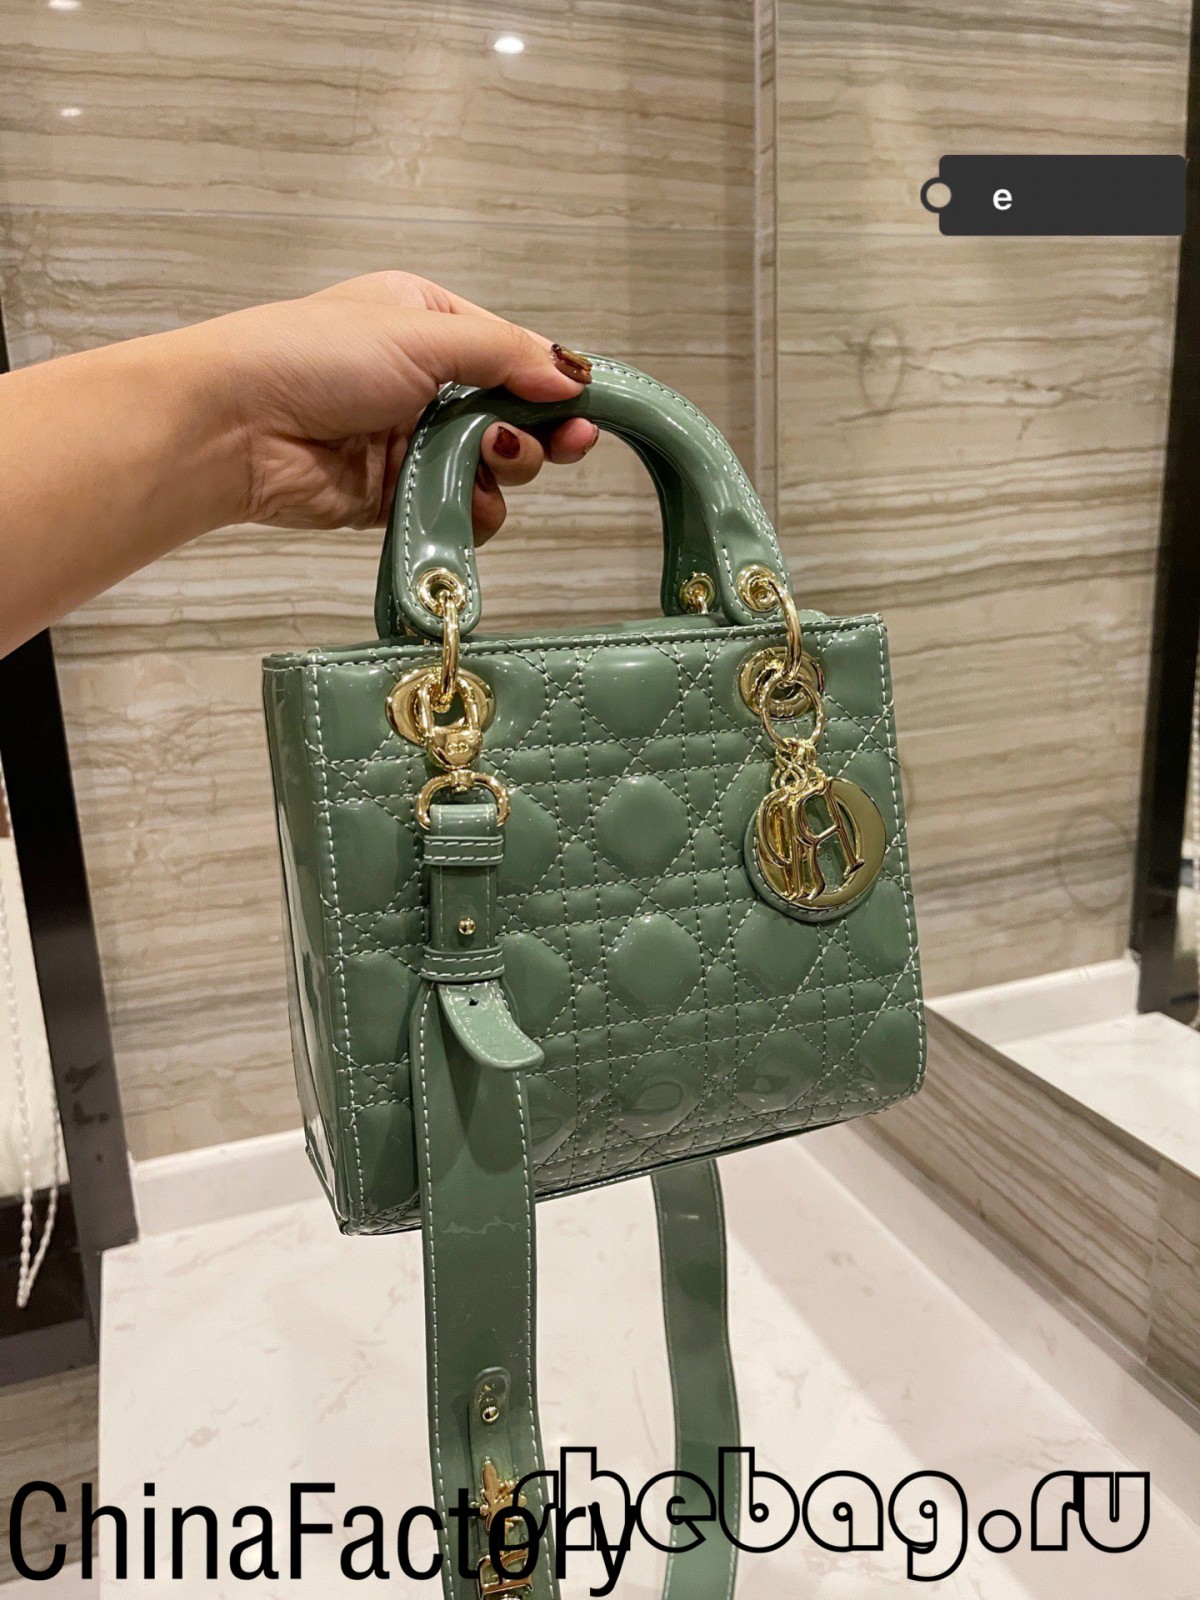 Онлайн-розпродаж жіночої міні-сумки вищої якості (2022 рік) - Інтернет-магазин підробленої сумки Louis Vuitton найкращої якості, копія дизайнерської сумки ru